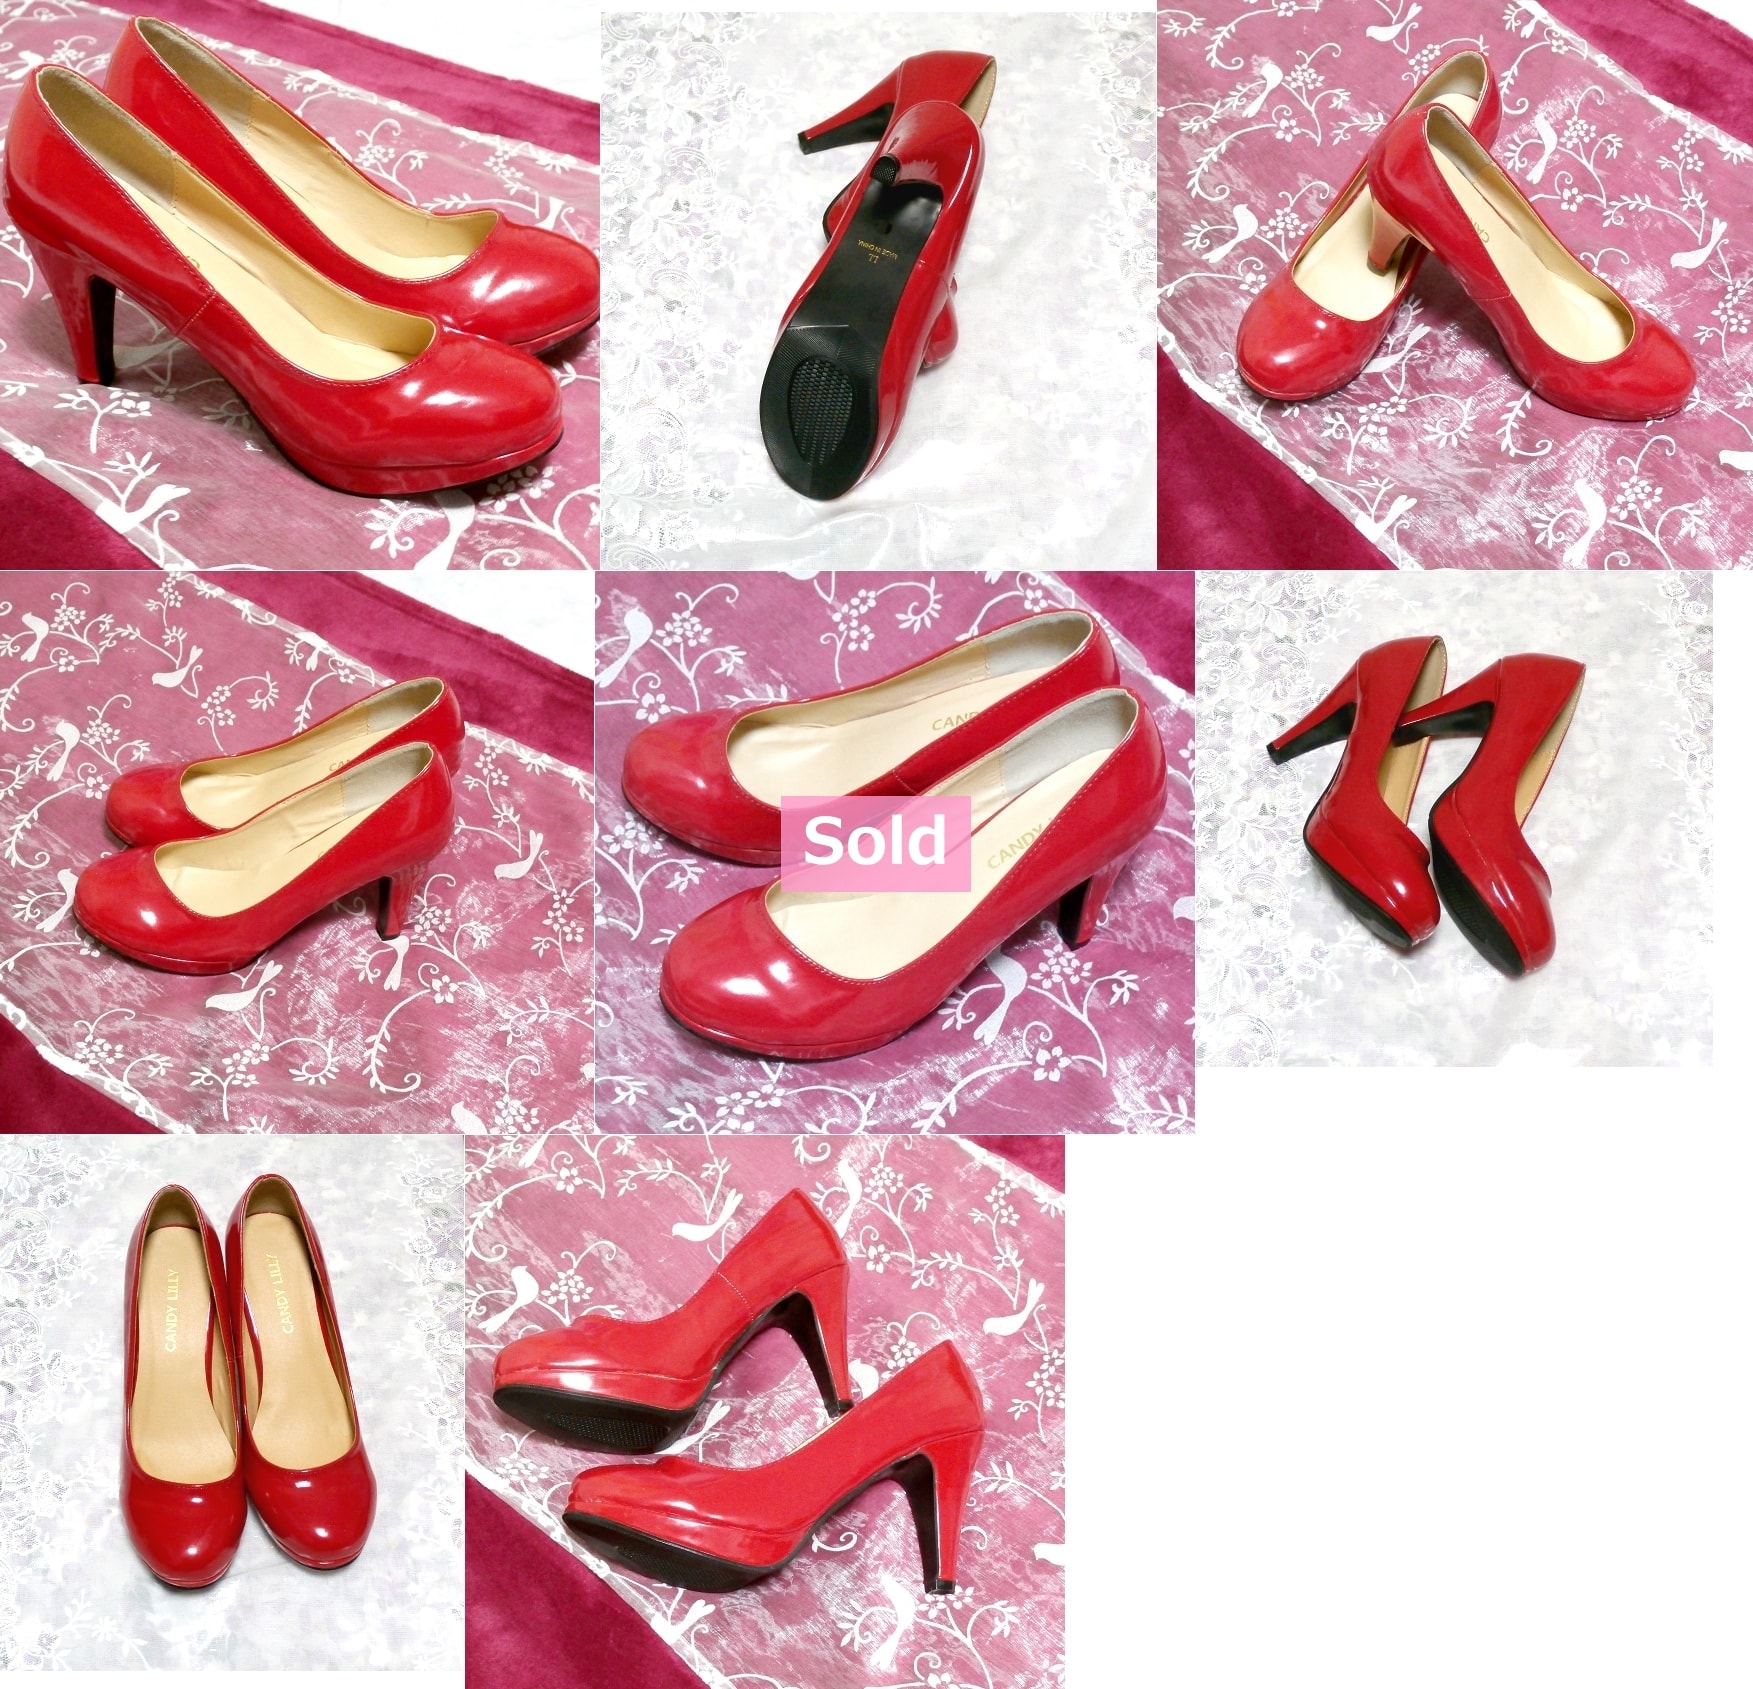 ヒール10cm真っ赤なセクシーハイヒールパンプス靴 Heel 3.93 in red crimson sexy high heel pumps shoes, パンプス&24.0cm&レッド系